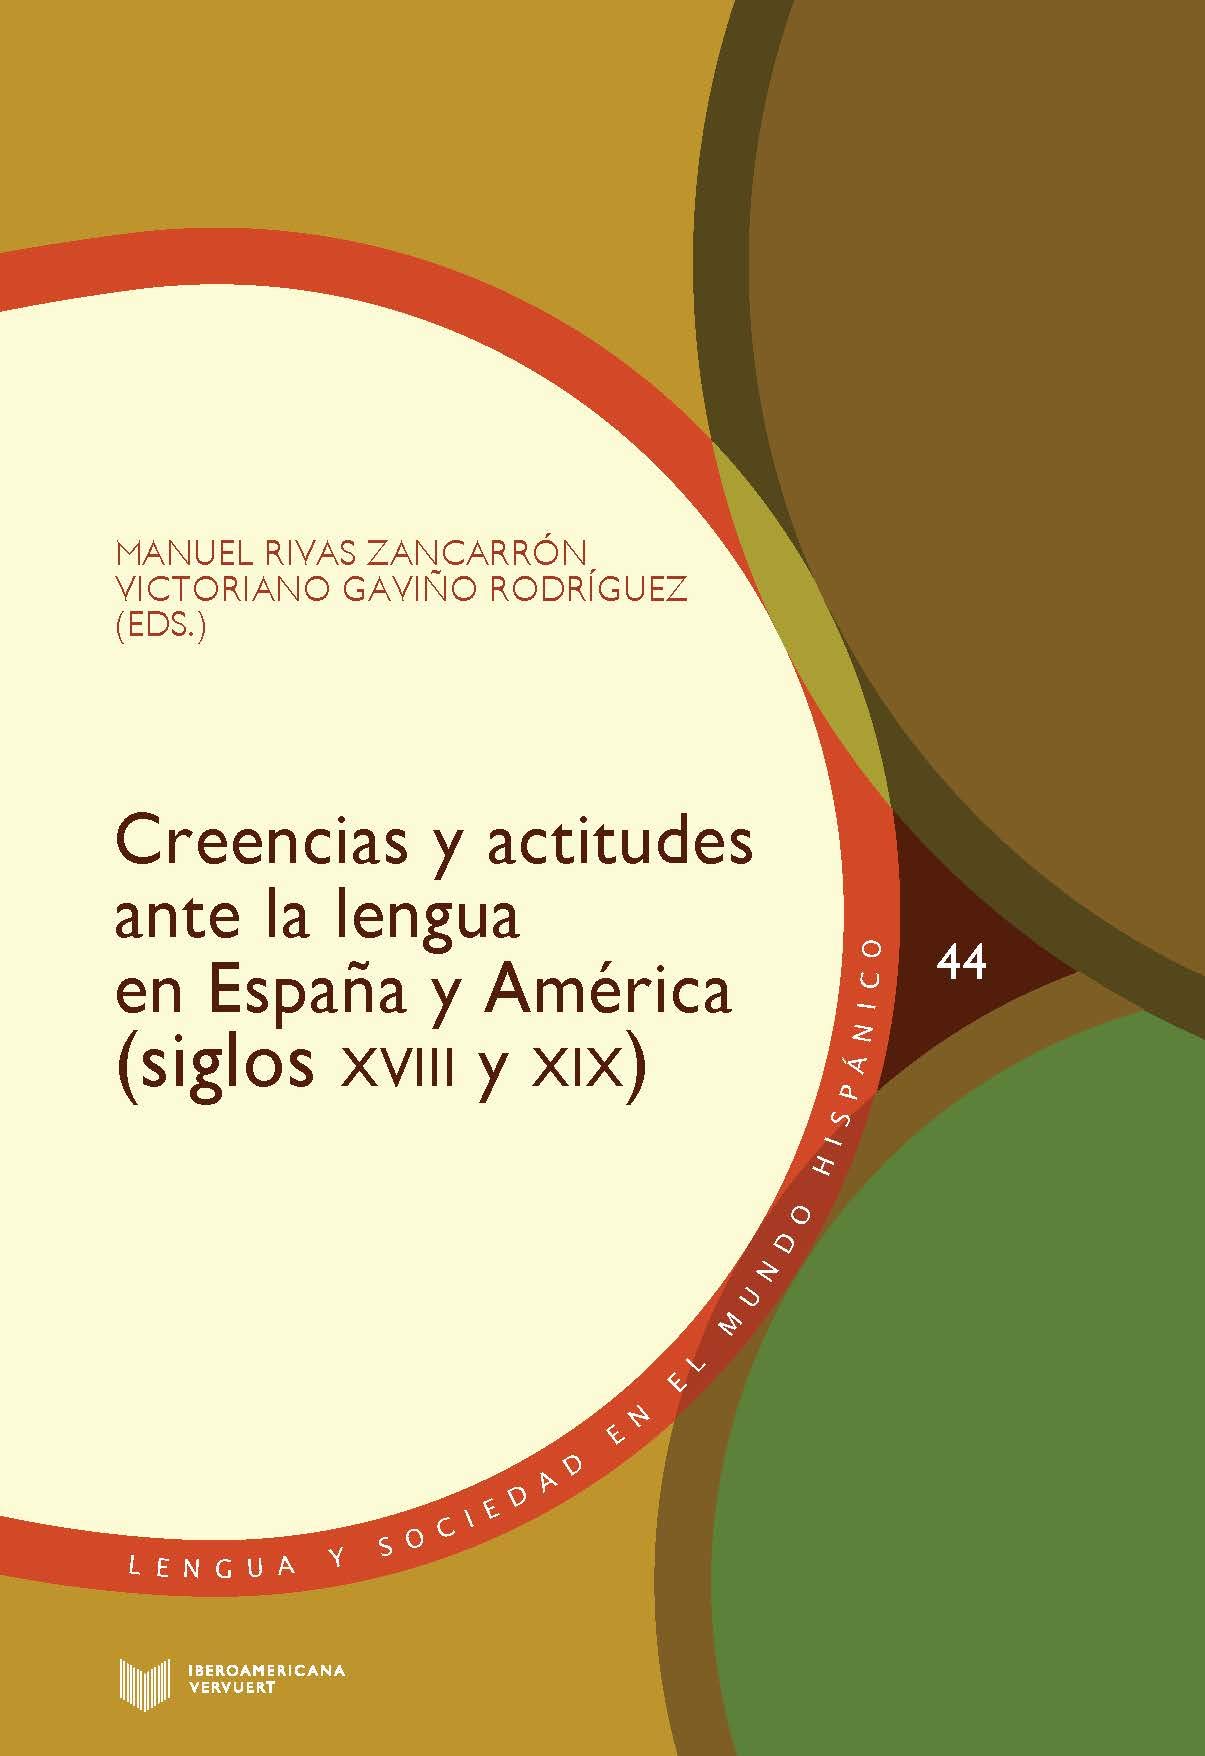 Creencias y actitudes ante la lengua en España y América 